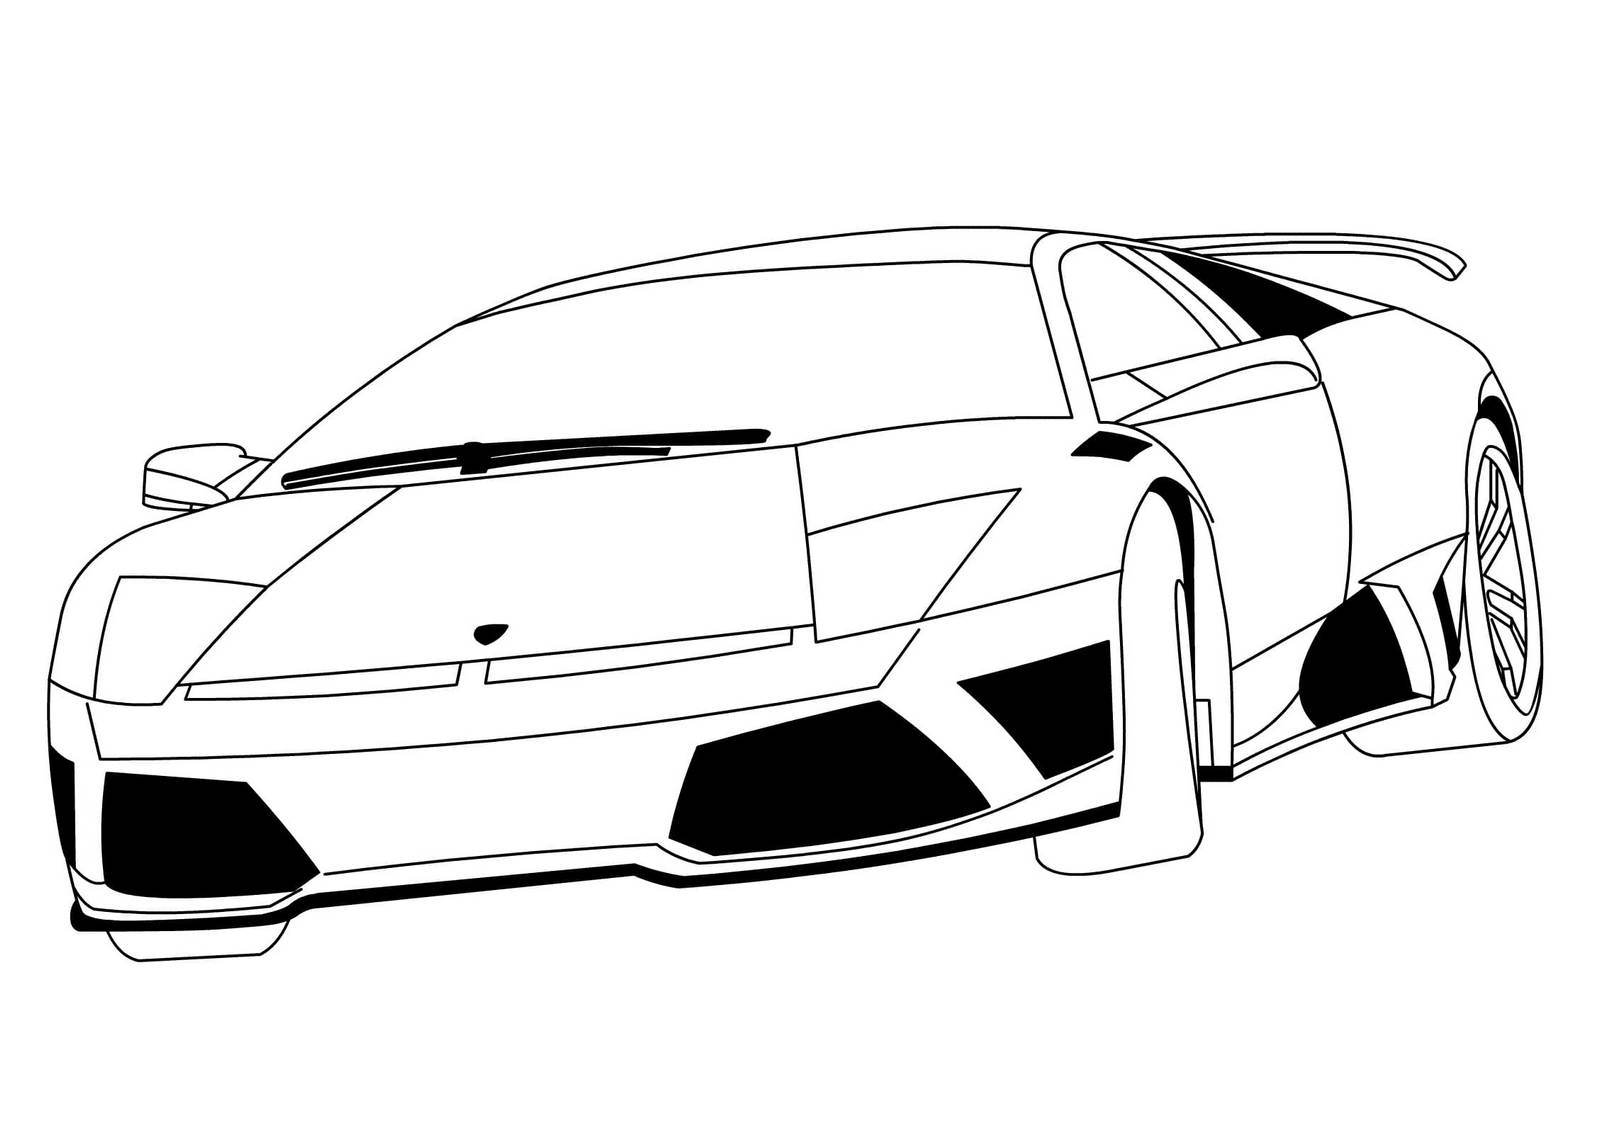 Lamborghini Aventador SV Pen Drawing - RL Illustrations - Drawings &  Illustration, Vehicles & Transportation, Automobiles & Cars, Lamborghini -  ArtPal